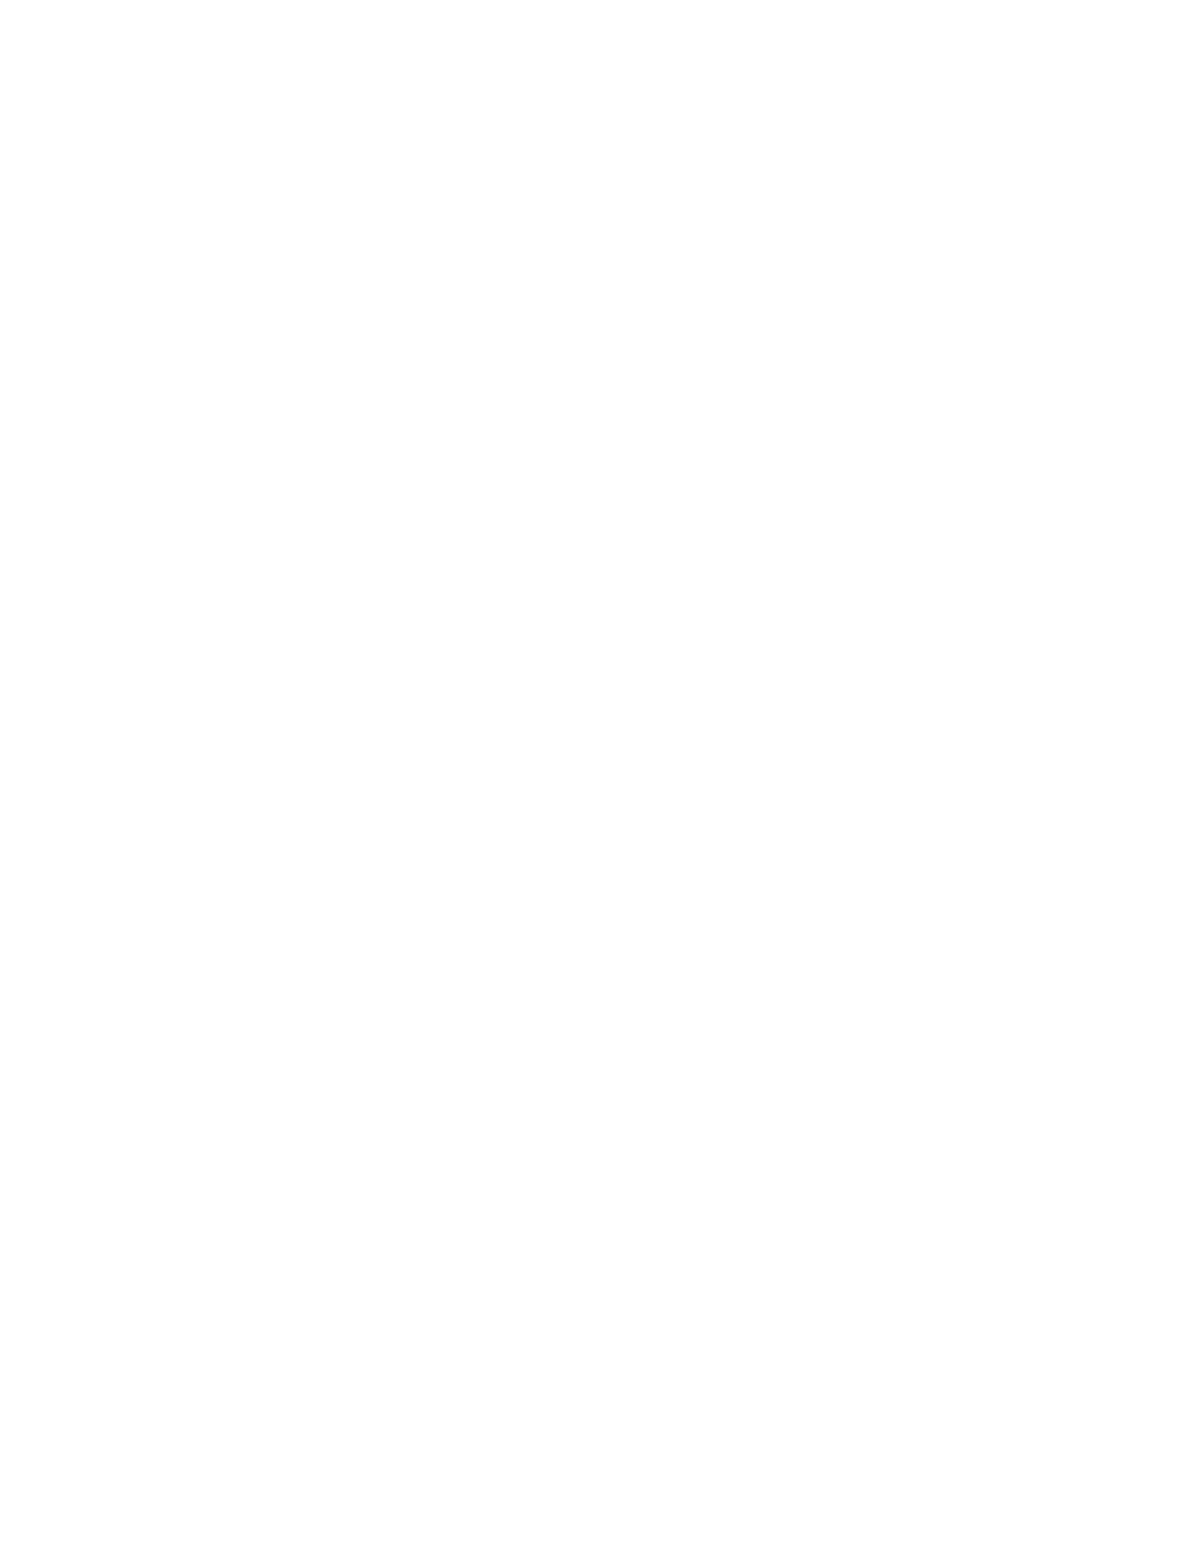 Brambles logo pour fonds sombres (PNG transparent)